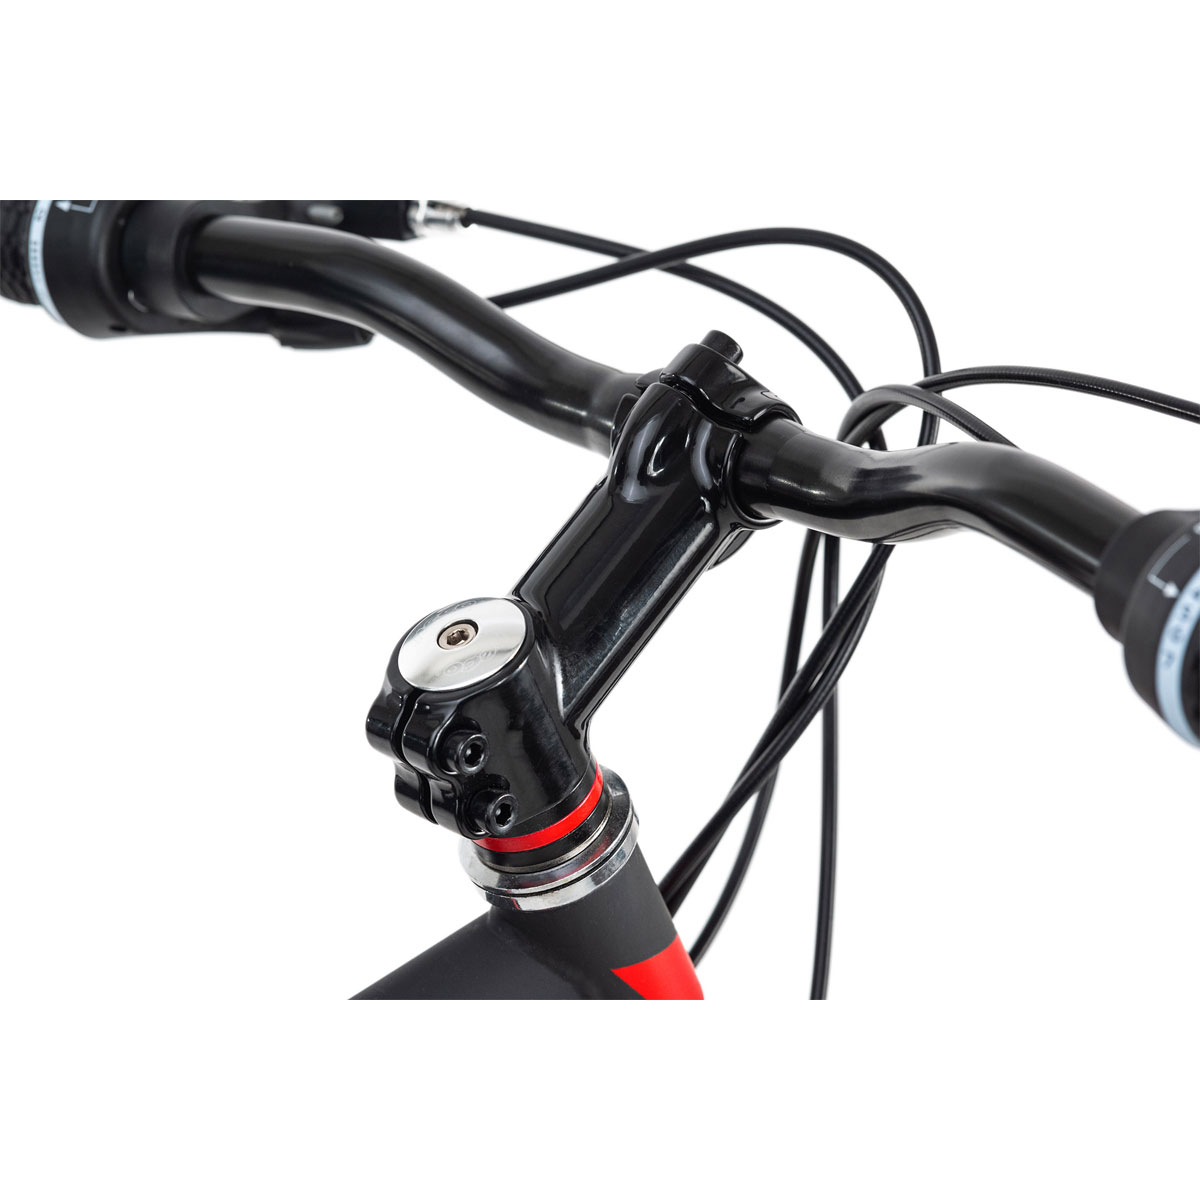 Mountainbike „Xtinct“, Hardtail, 29 Zoll, 46 cm, schwarz-rot